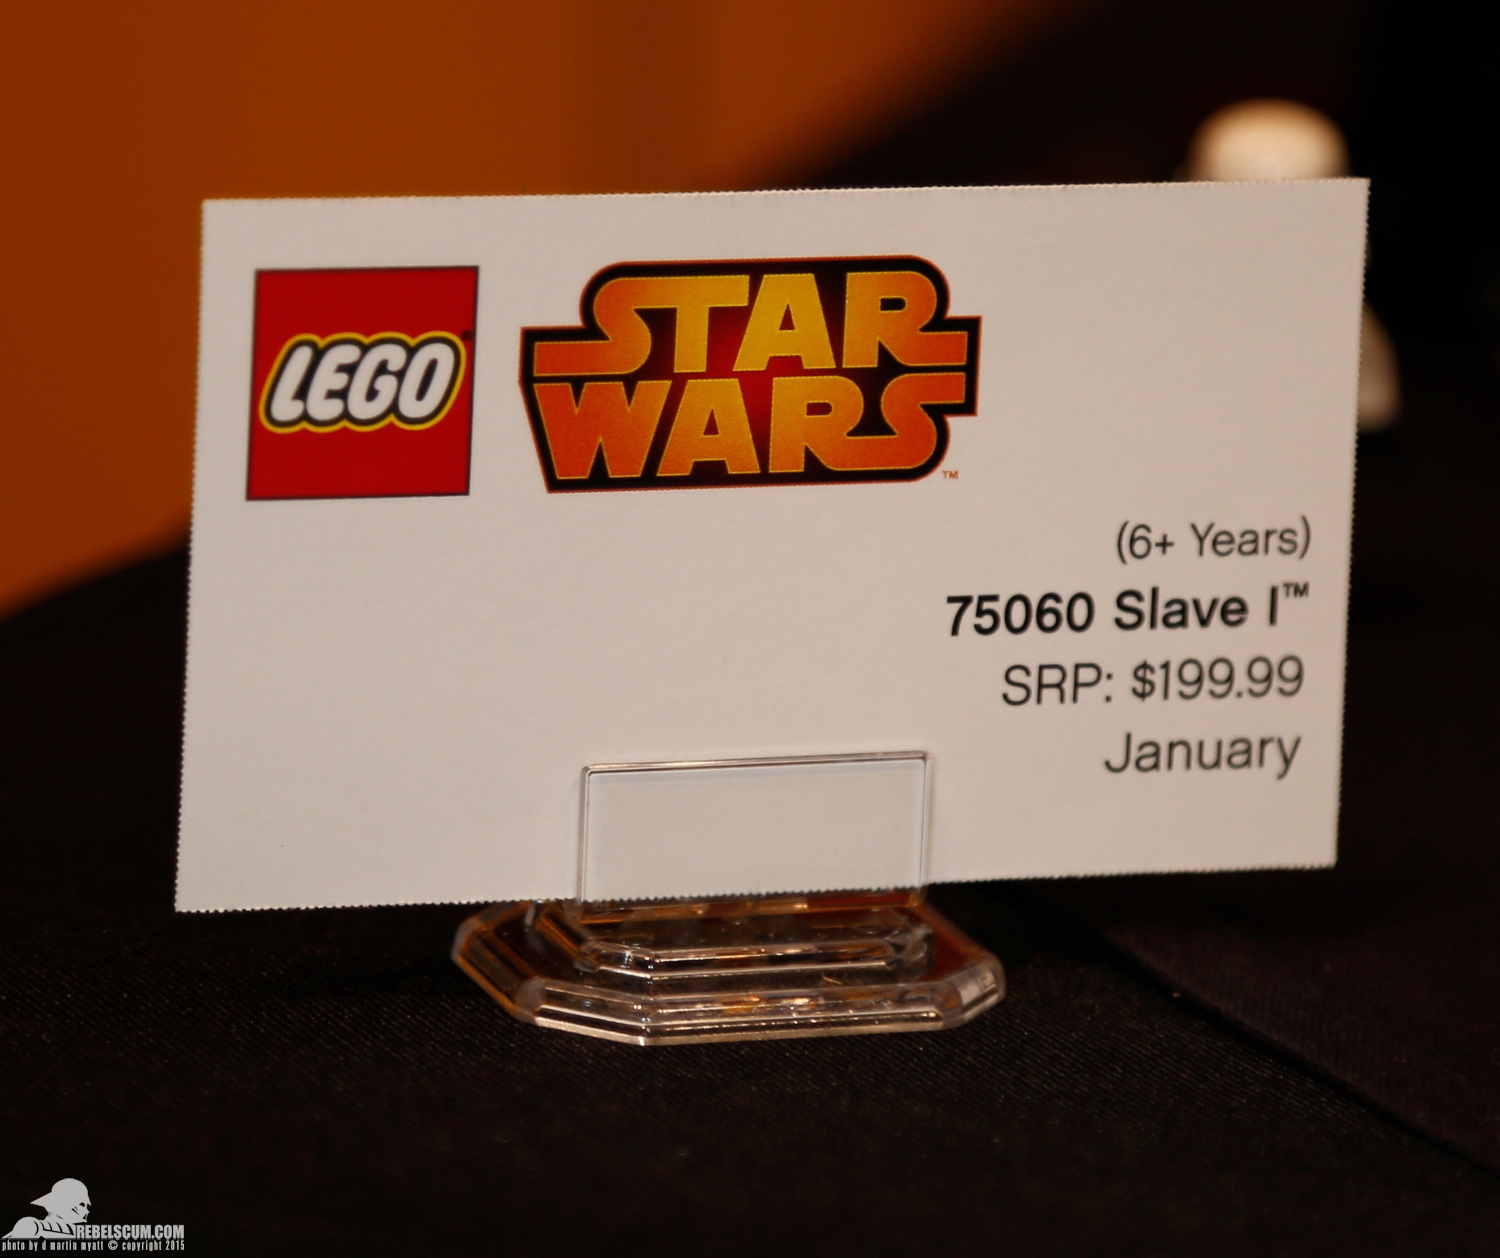 2015-International-Toy-Fair-Star-Wars-Lego-141.jpg